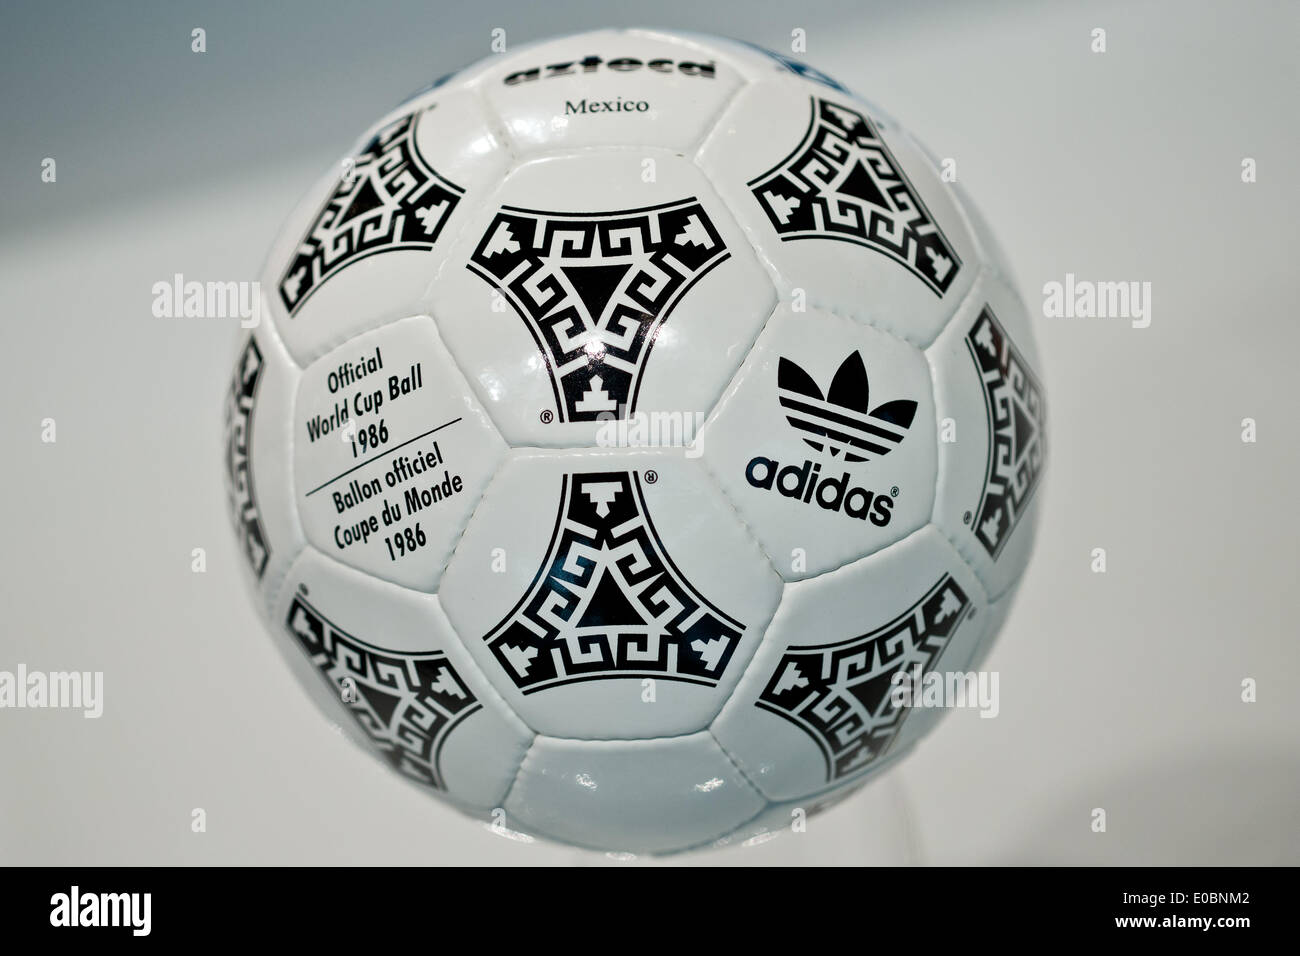 azafata Mezquita Enciclopedia Fürth, Alemania. 08 de mayo de 2014. "El Azteca de México una pelota de  fútbol que fue el balón oficial de la copa mundial de fútbol de 1986 en  México es representada